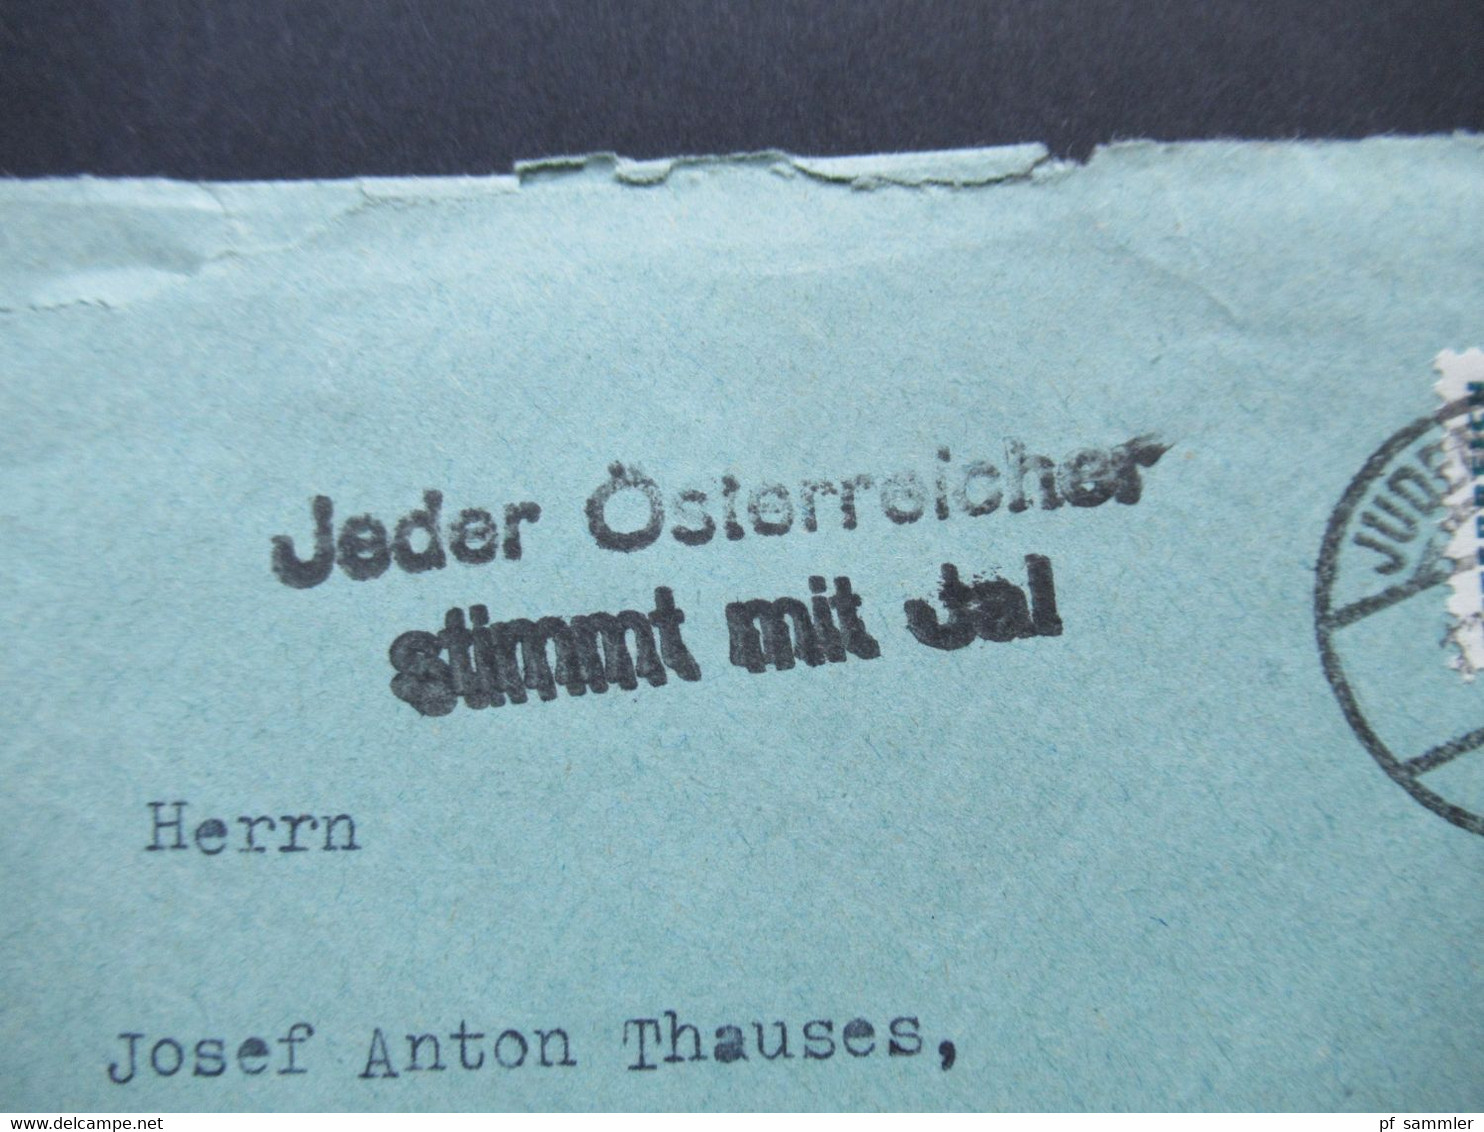 Österreich 1938 Stempel Judenburg Und Propaganda Stp. Mit Schuschnigg Für Ein Freies Österreich! Ja! Jeder Österreicher - Covers & Documents